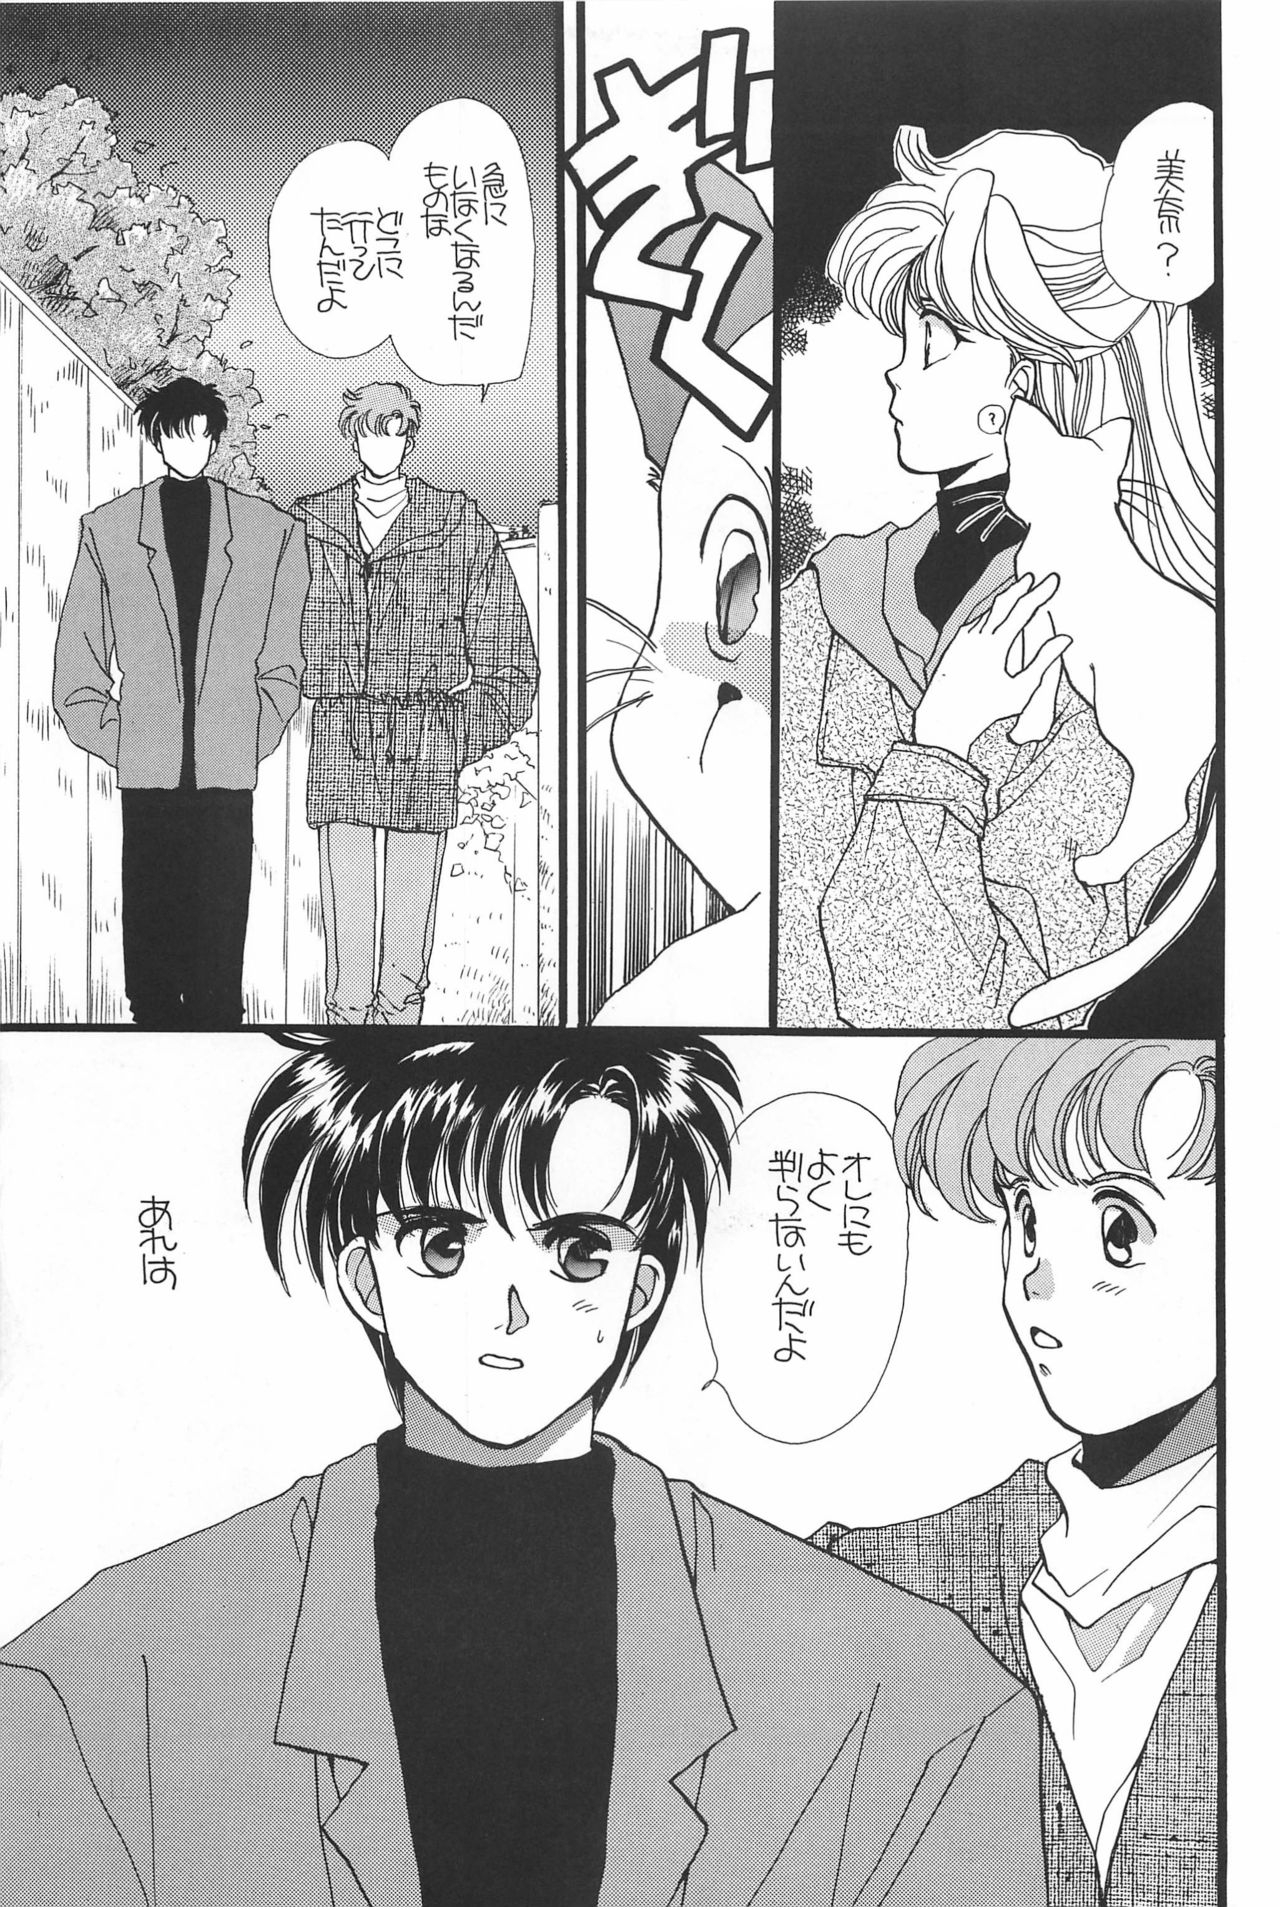 [Hello World (Muttri Moony)] Kaze no You ni Yume no You ni - Sailor Moon Collection (Sailor Moon) 92